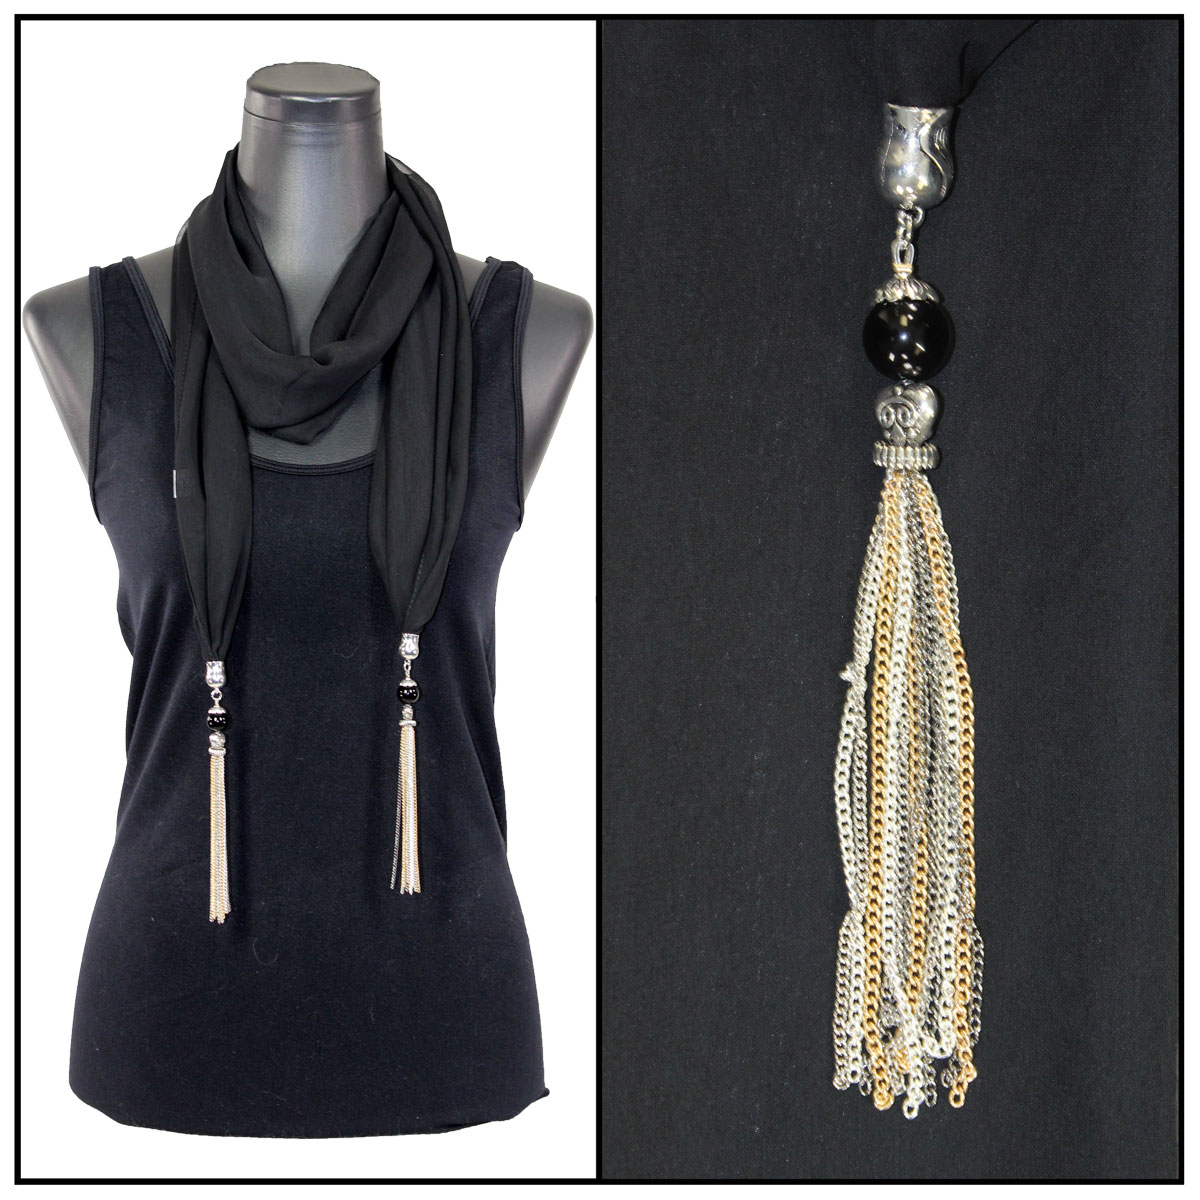 9001 - Tasseled Silky Dress Scarves Solid Grey<br>
Metal Tassels - 